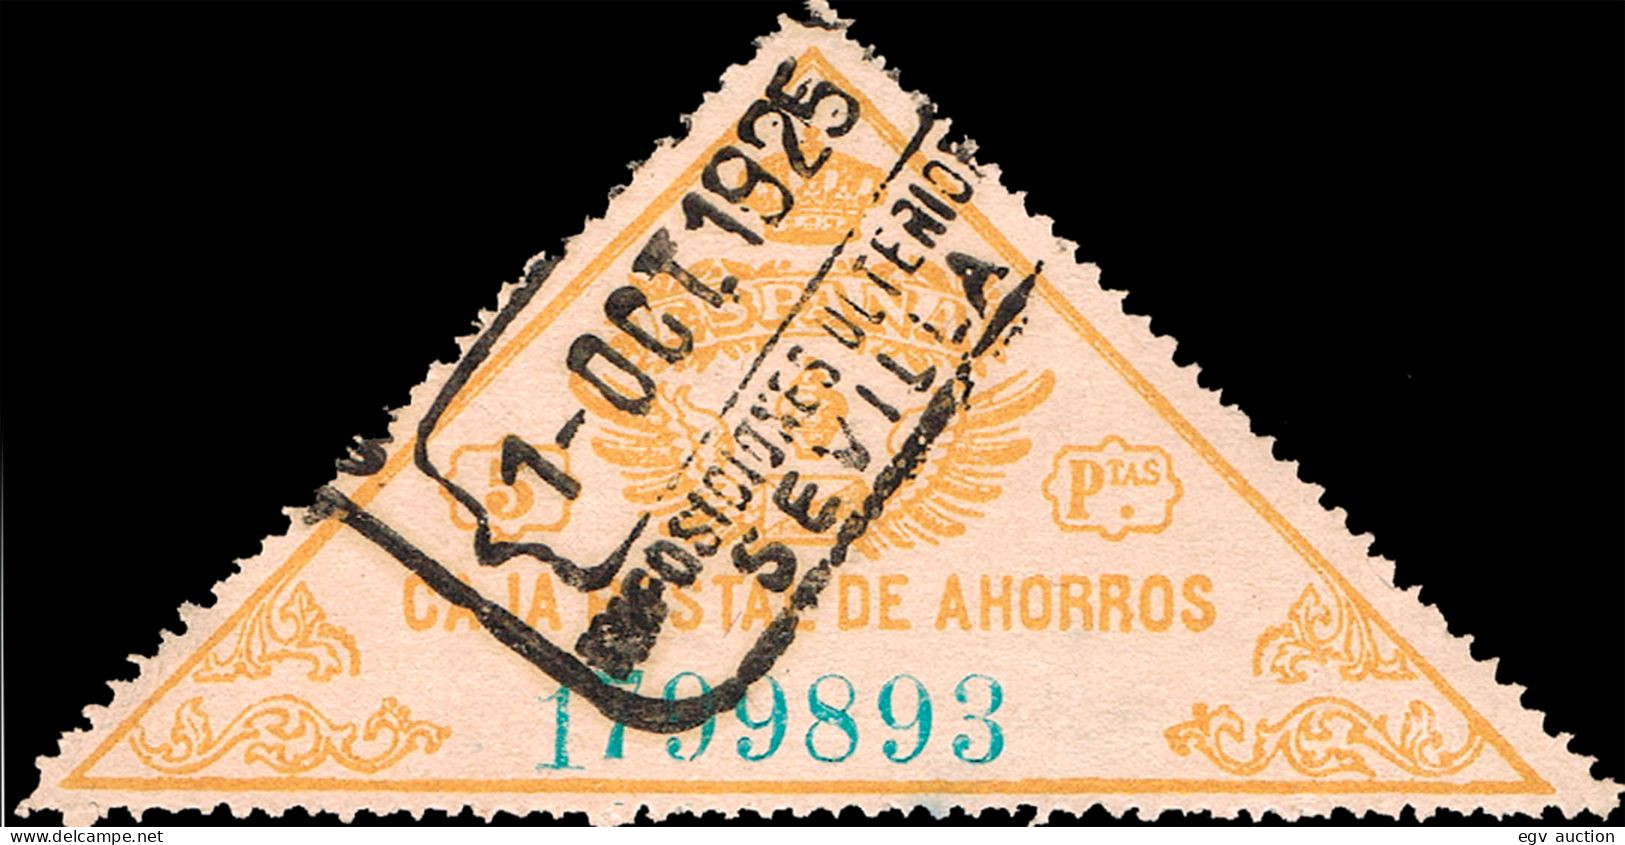 Sevilla - Caja Postal Ahorros - Gávez O 5 - Mat "Caja Postal De Ahorros - Sevilla Imposiciones Ulteriores" - Post-fiscaal